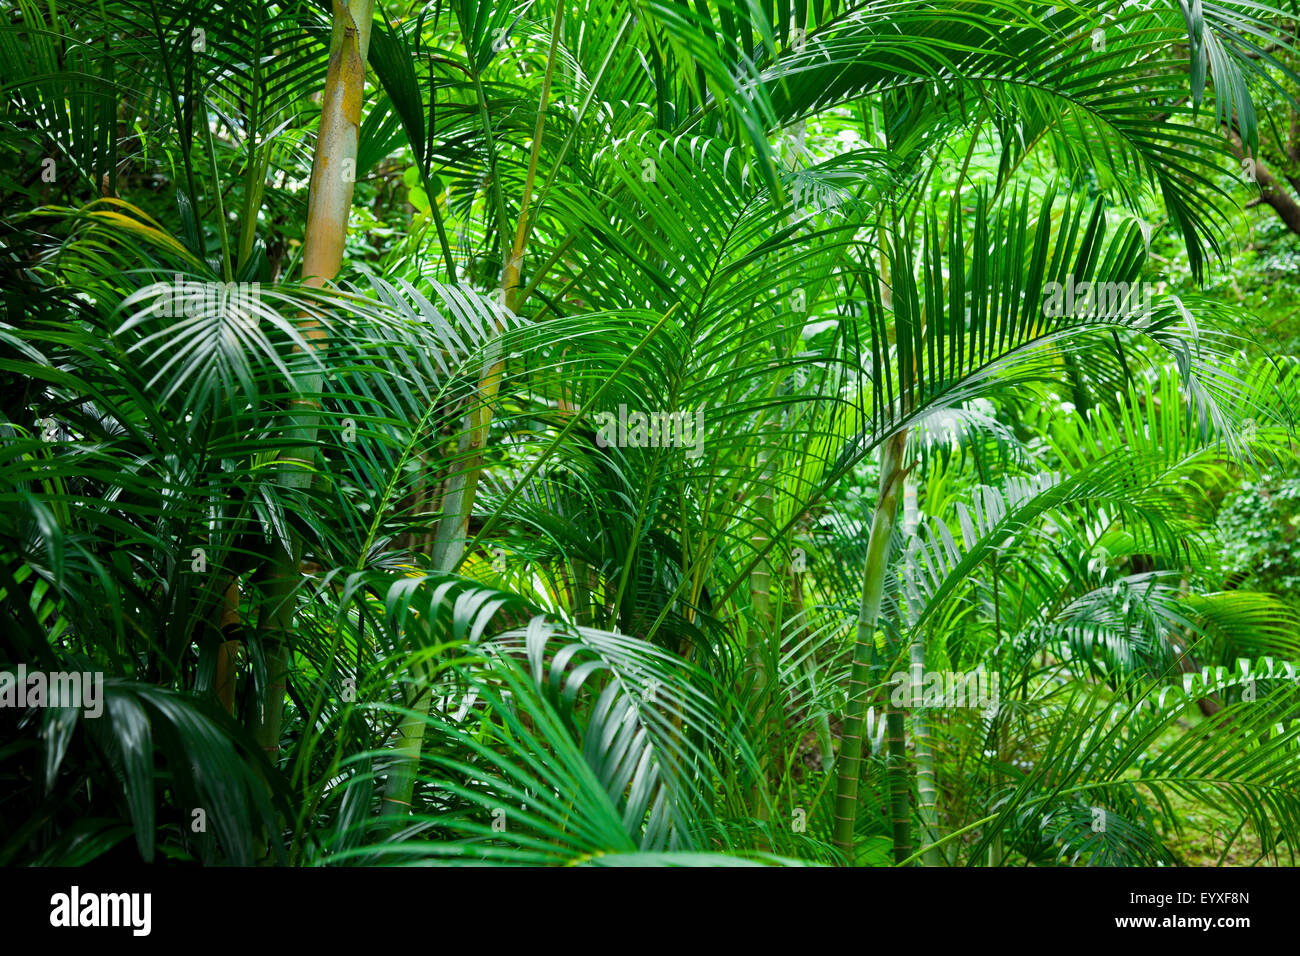 dschungel palmen tropischen grünen üppigen grunen uppigen